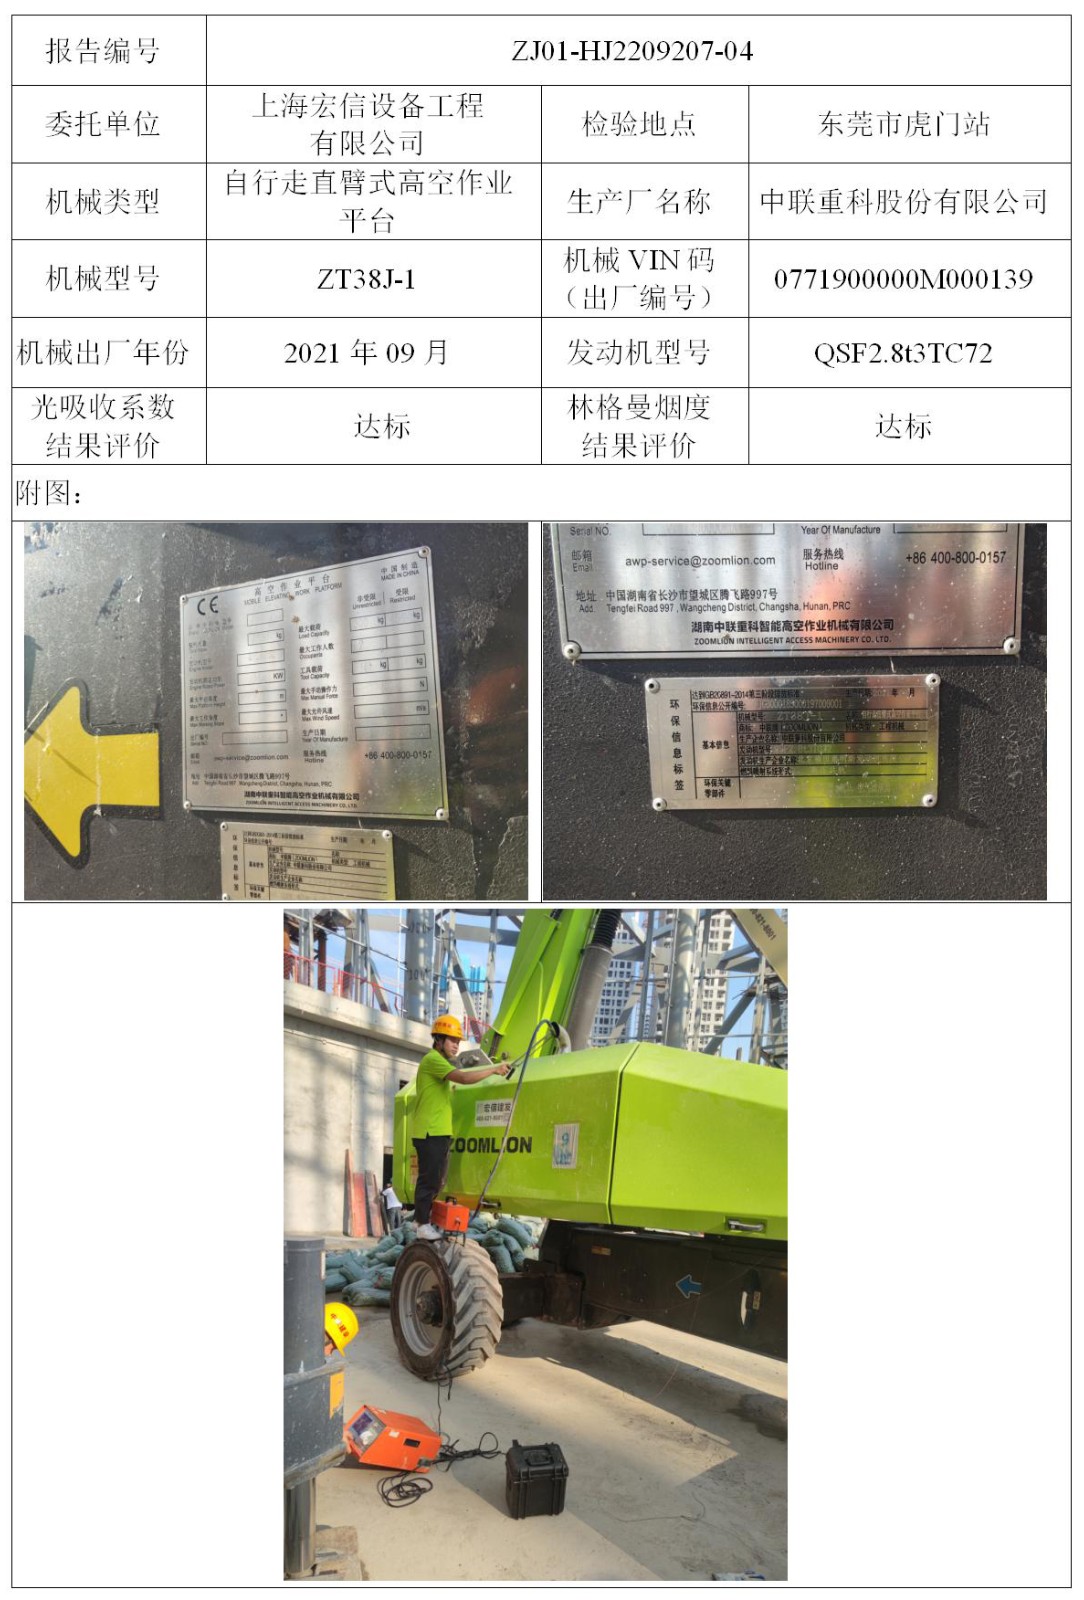 委托-ZJ01-HJ2209207-04上海宏信设备工程有限公司（叉车废气）二维码-张伟仪_01.jpg